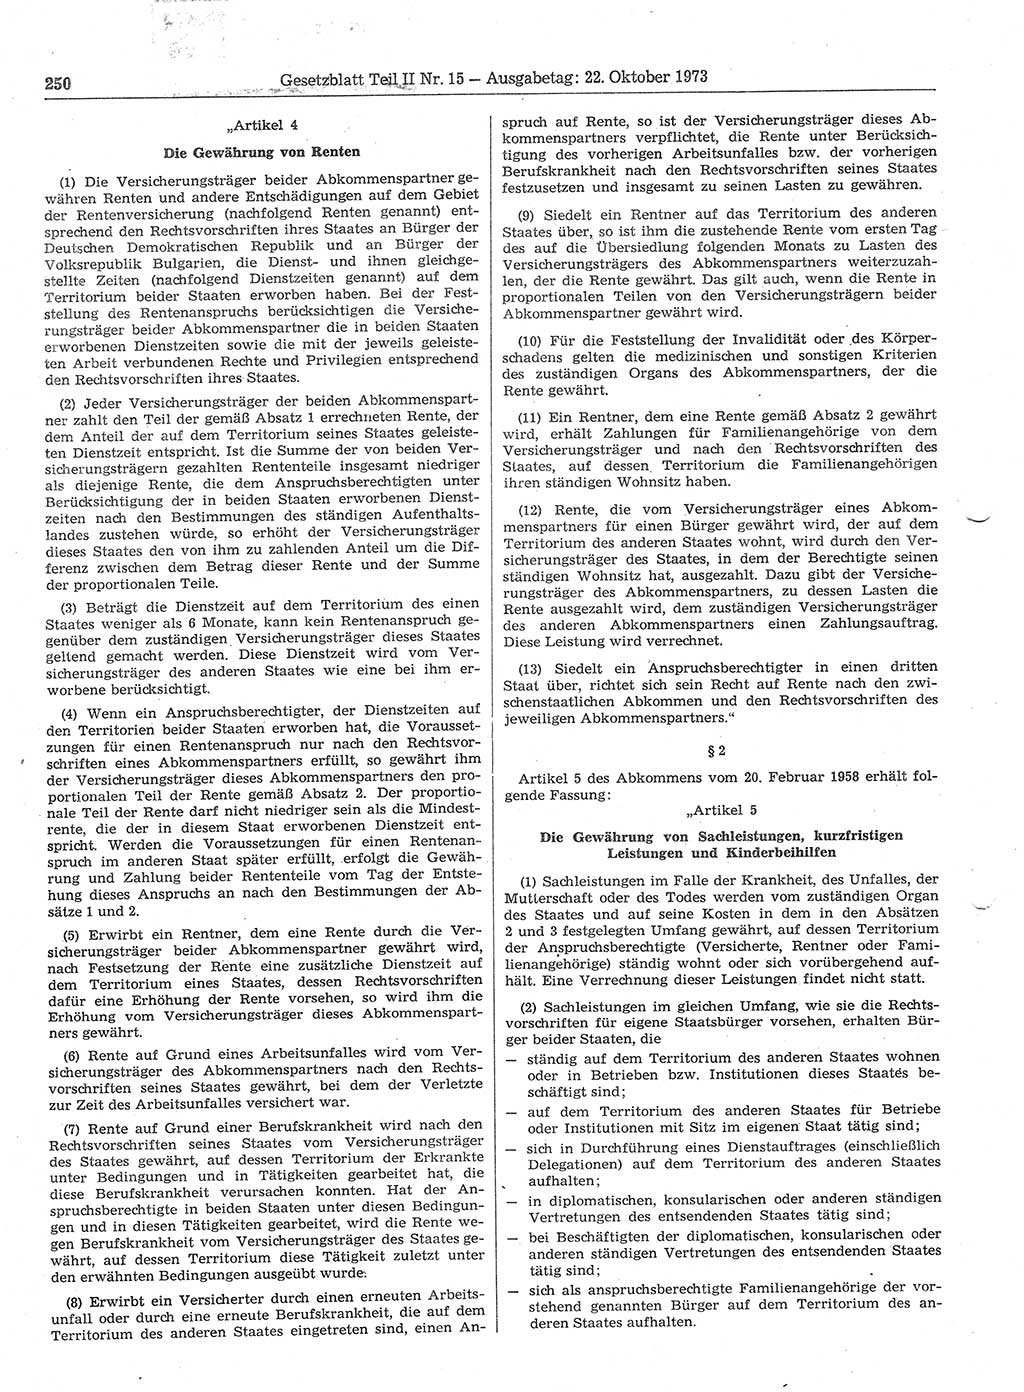 Gesetzblatt (GBl.) der Deutschen Demokratischen Republik (DDR) Teil ⅠⅠ 1973, Seite 250 (GBl. DDR ⅠⅠ 1973, S. 250)